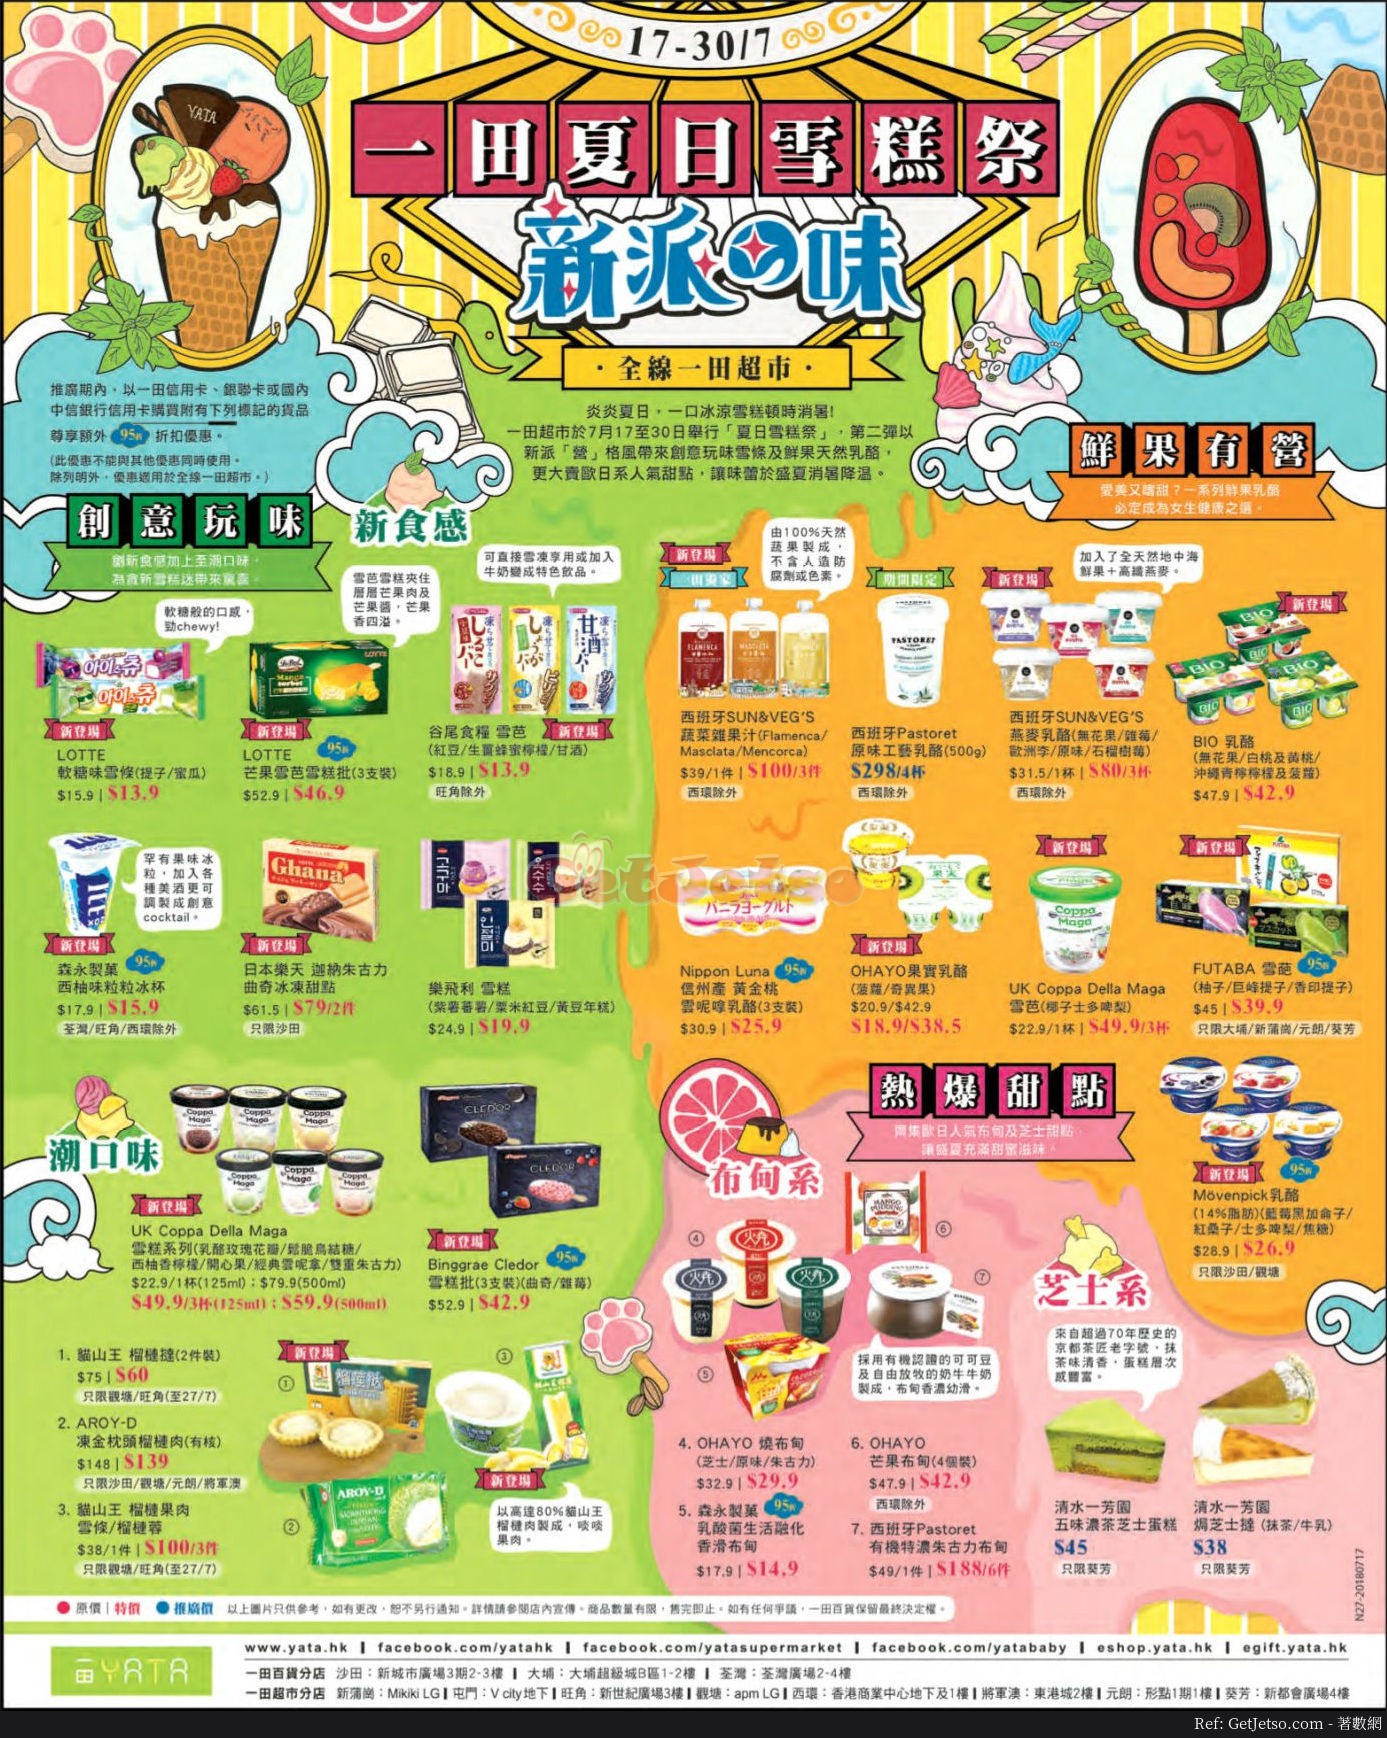 一田百貨夏日雪糕祭優惠part2(18年7月17-30日)圖片1